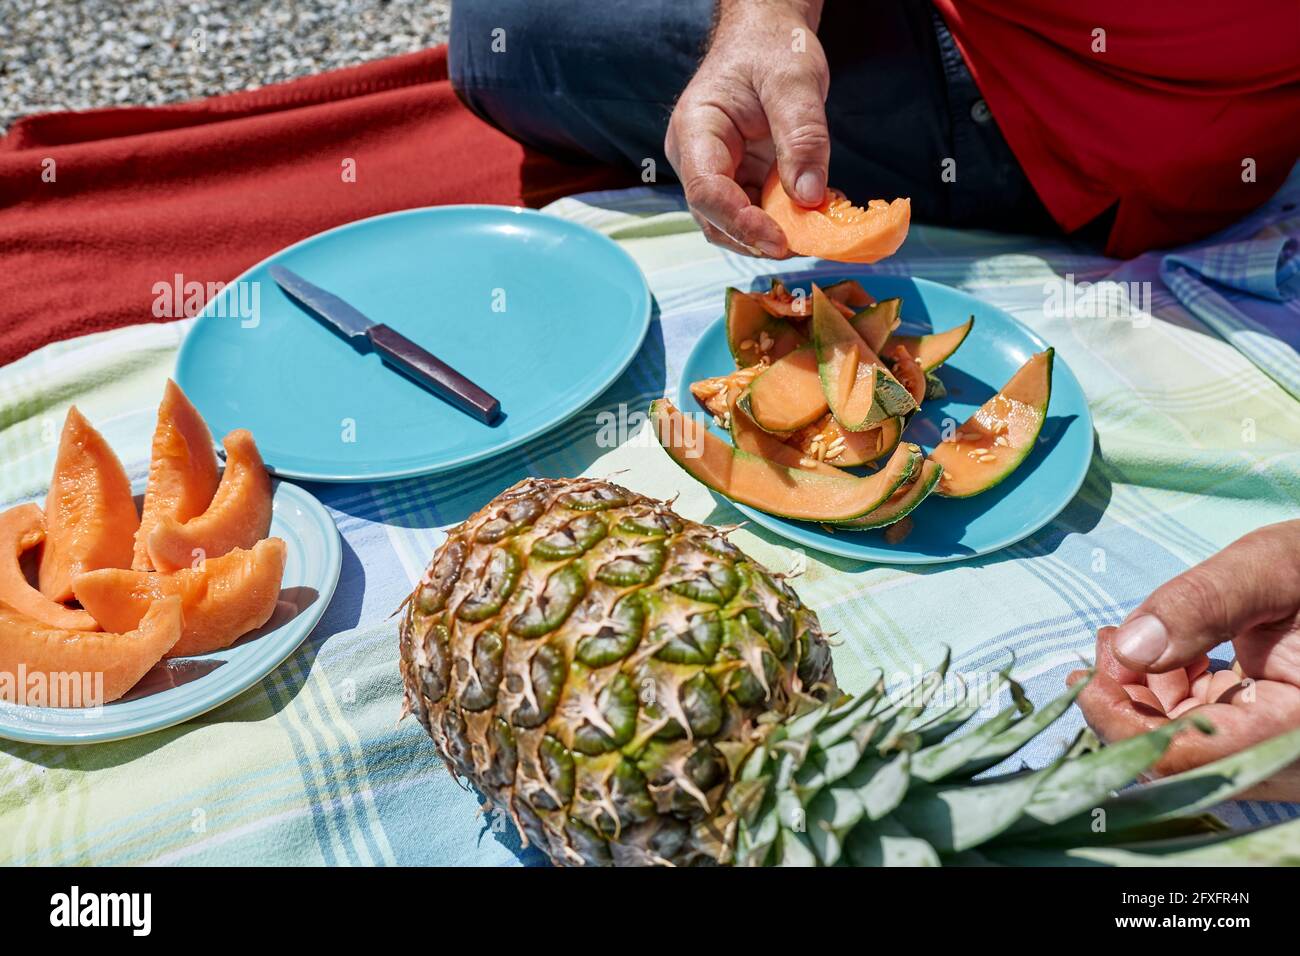 Ehepaar mittleren Alters bei einem Picknick am Meer mit frischen exotischen Früchten. Mann schneidet eine Melone. Frühling, Sommer Lifestyle, Liebe Dating-Konzept. Stockfoto